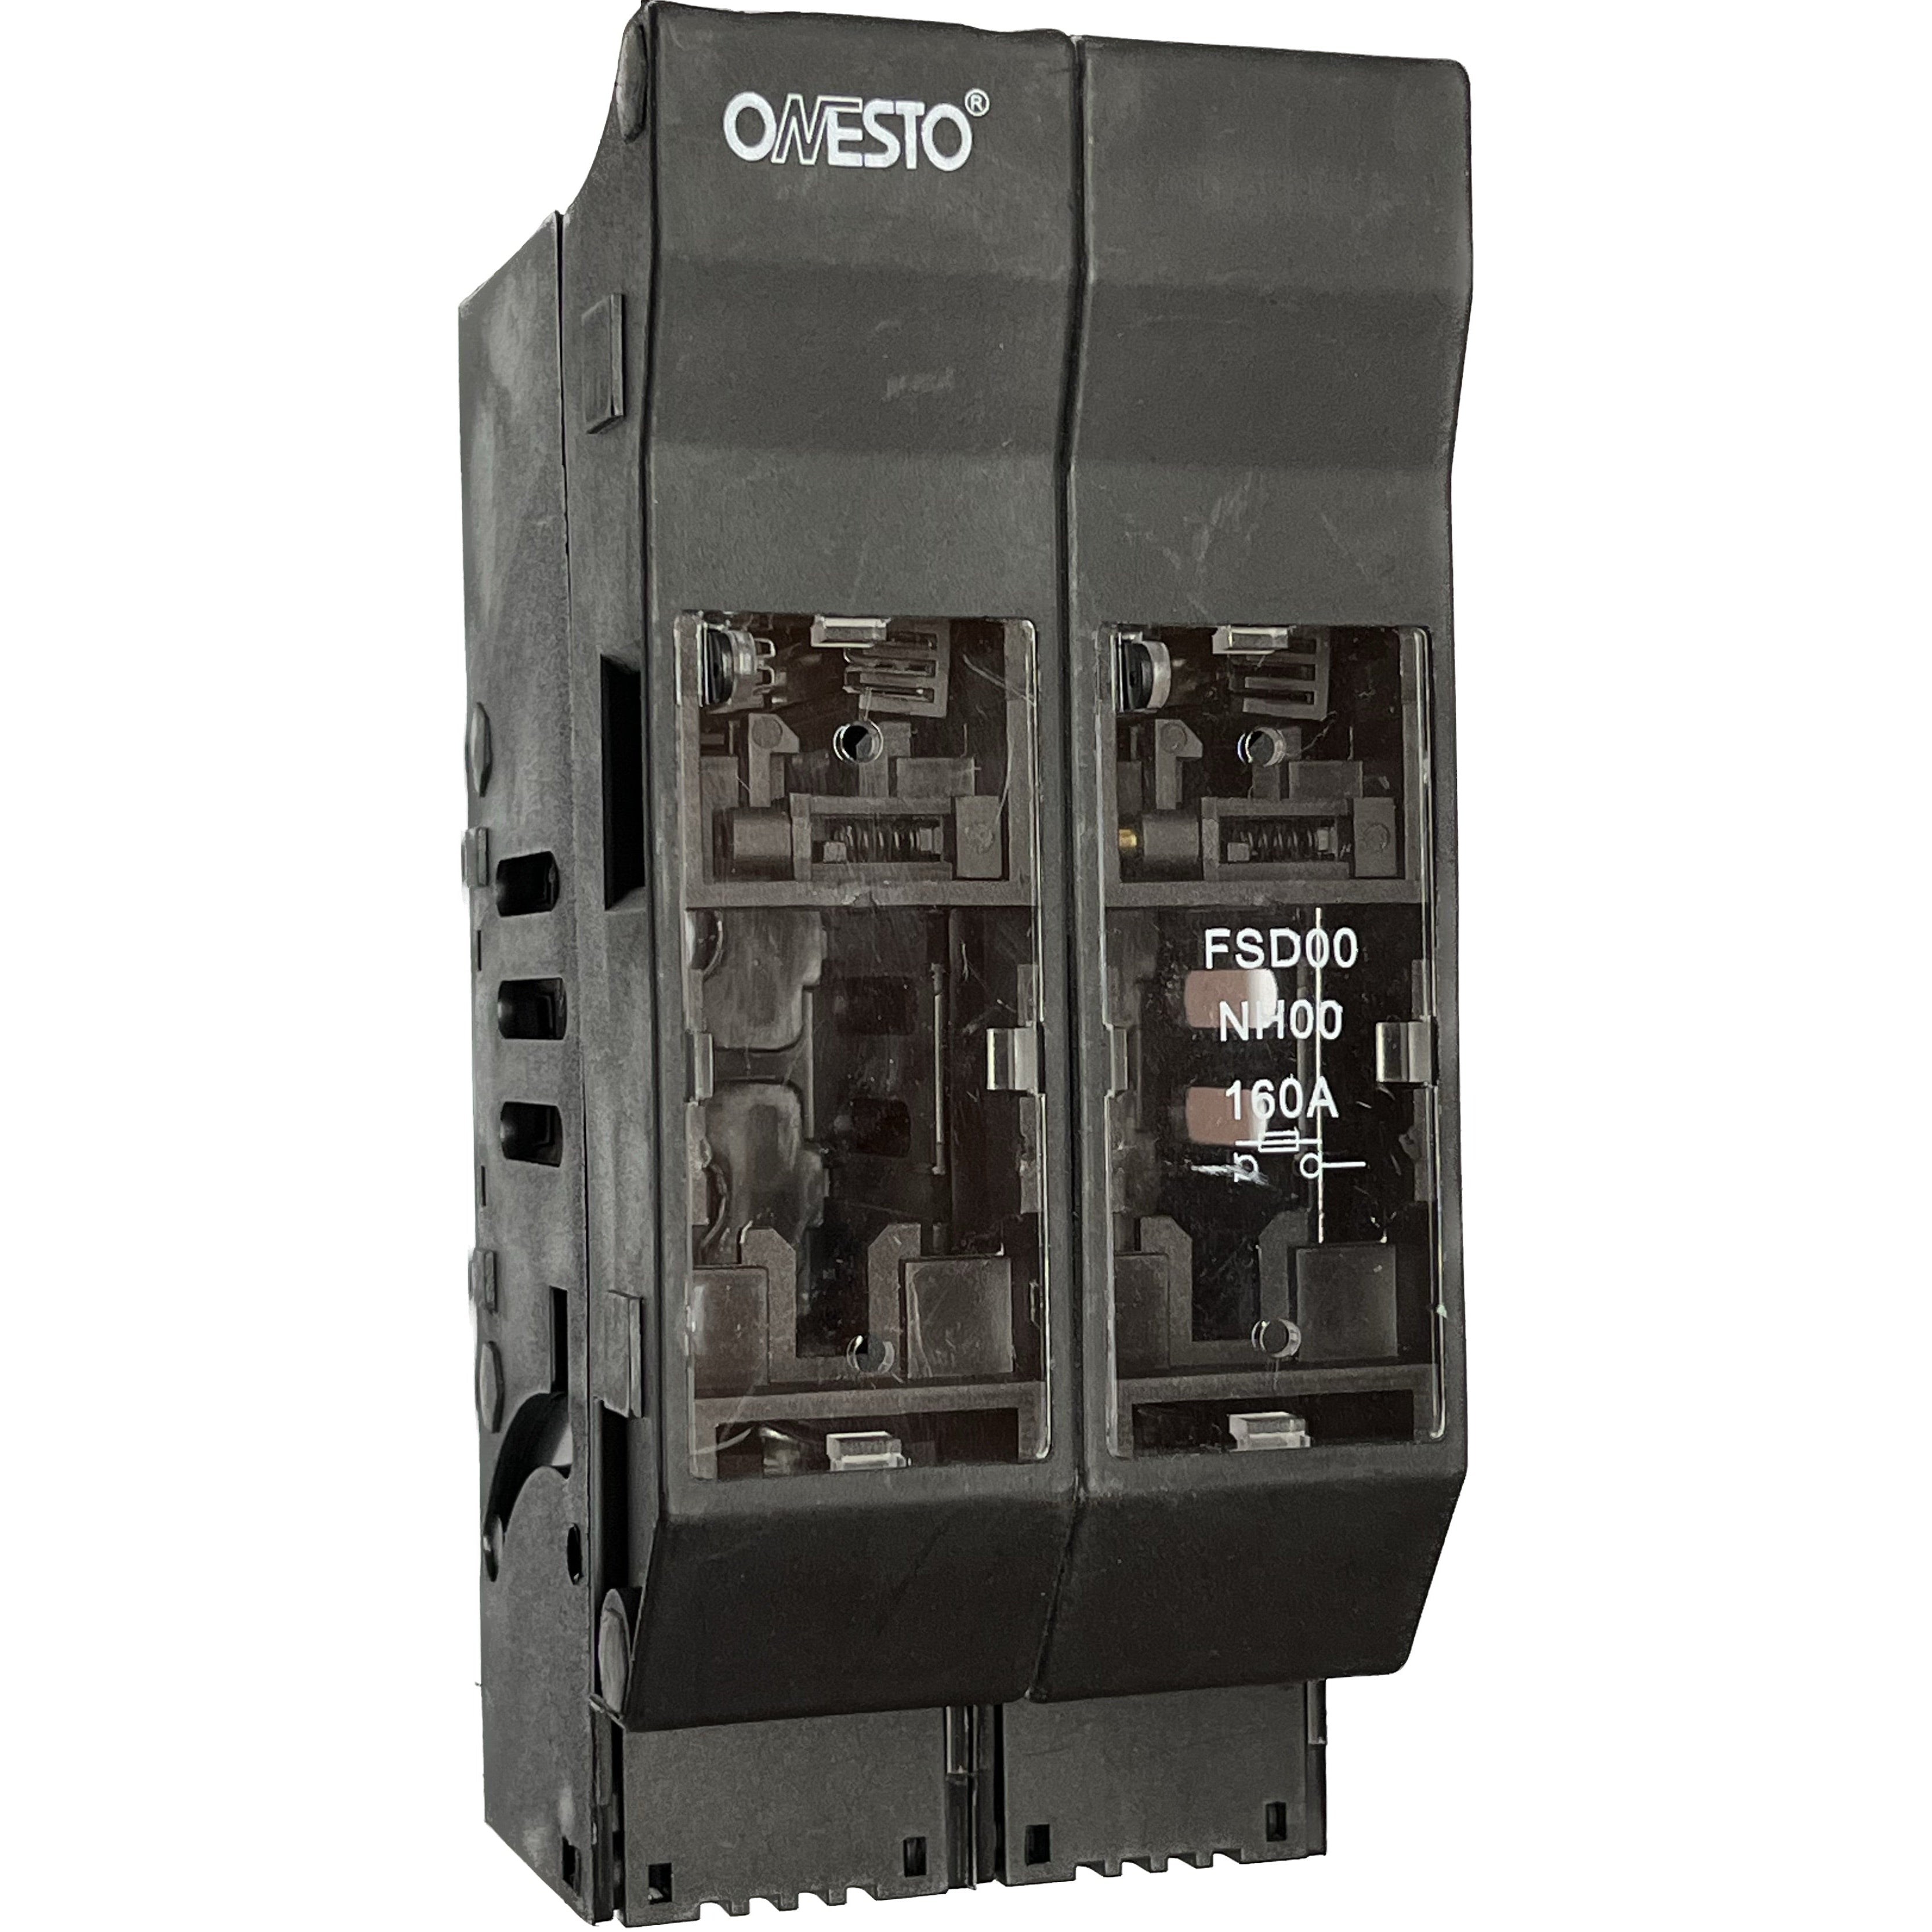 Battery Disconnect Fuse Box Onesto-Onesto-2𝑃 100/160𝐴-diyshop.co.za